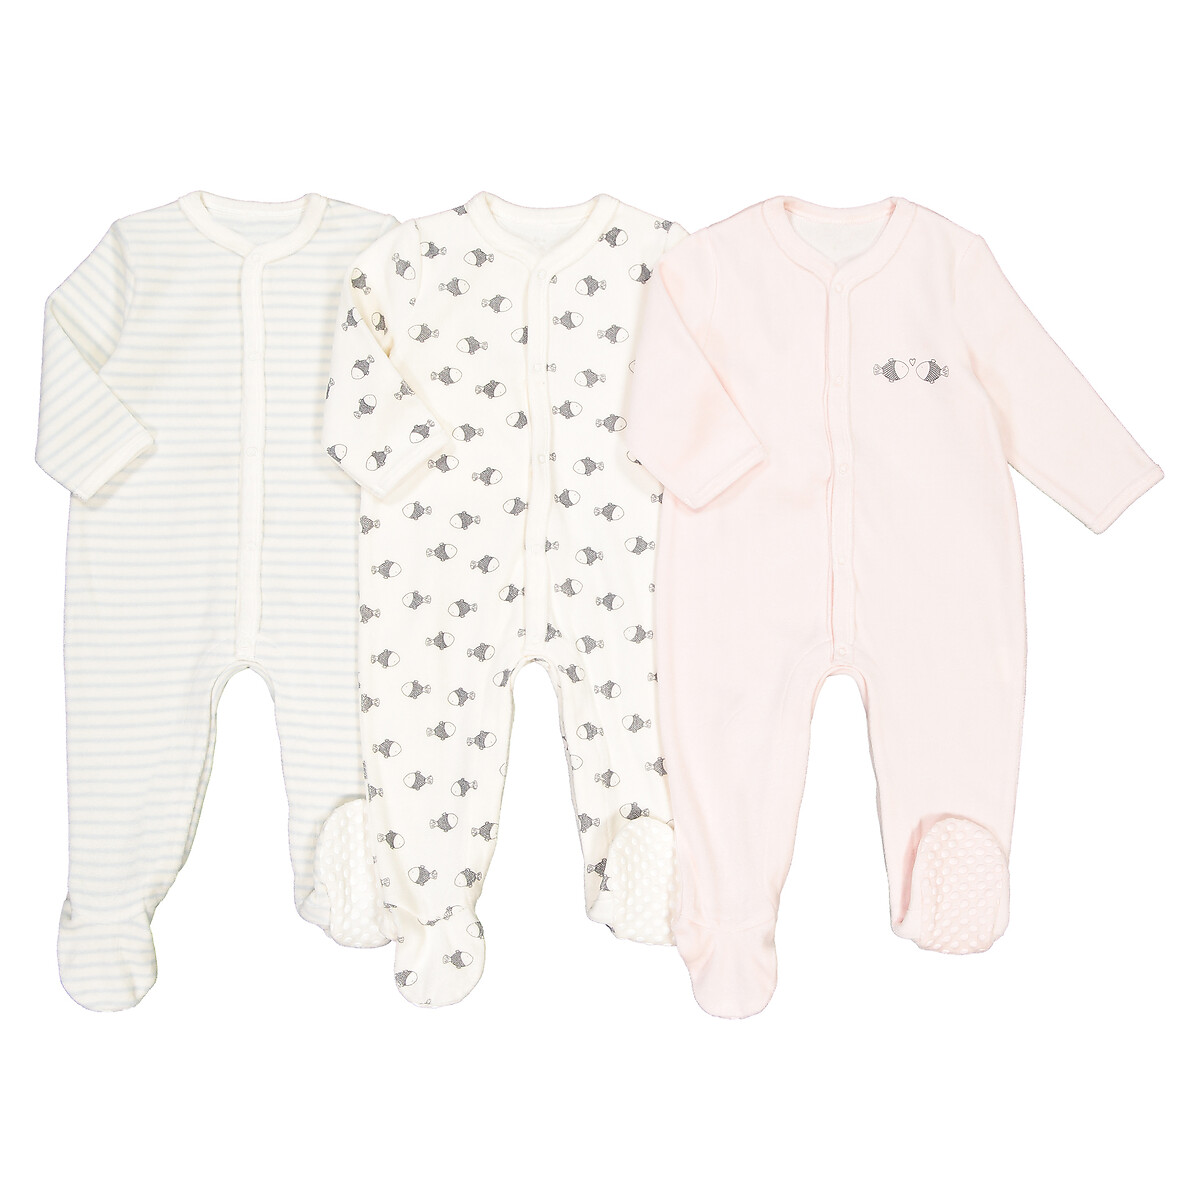 Набор Из трех пижам для новорожденных из велюра для детей 2х лет рожденные раньше срока - 45 см розовый